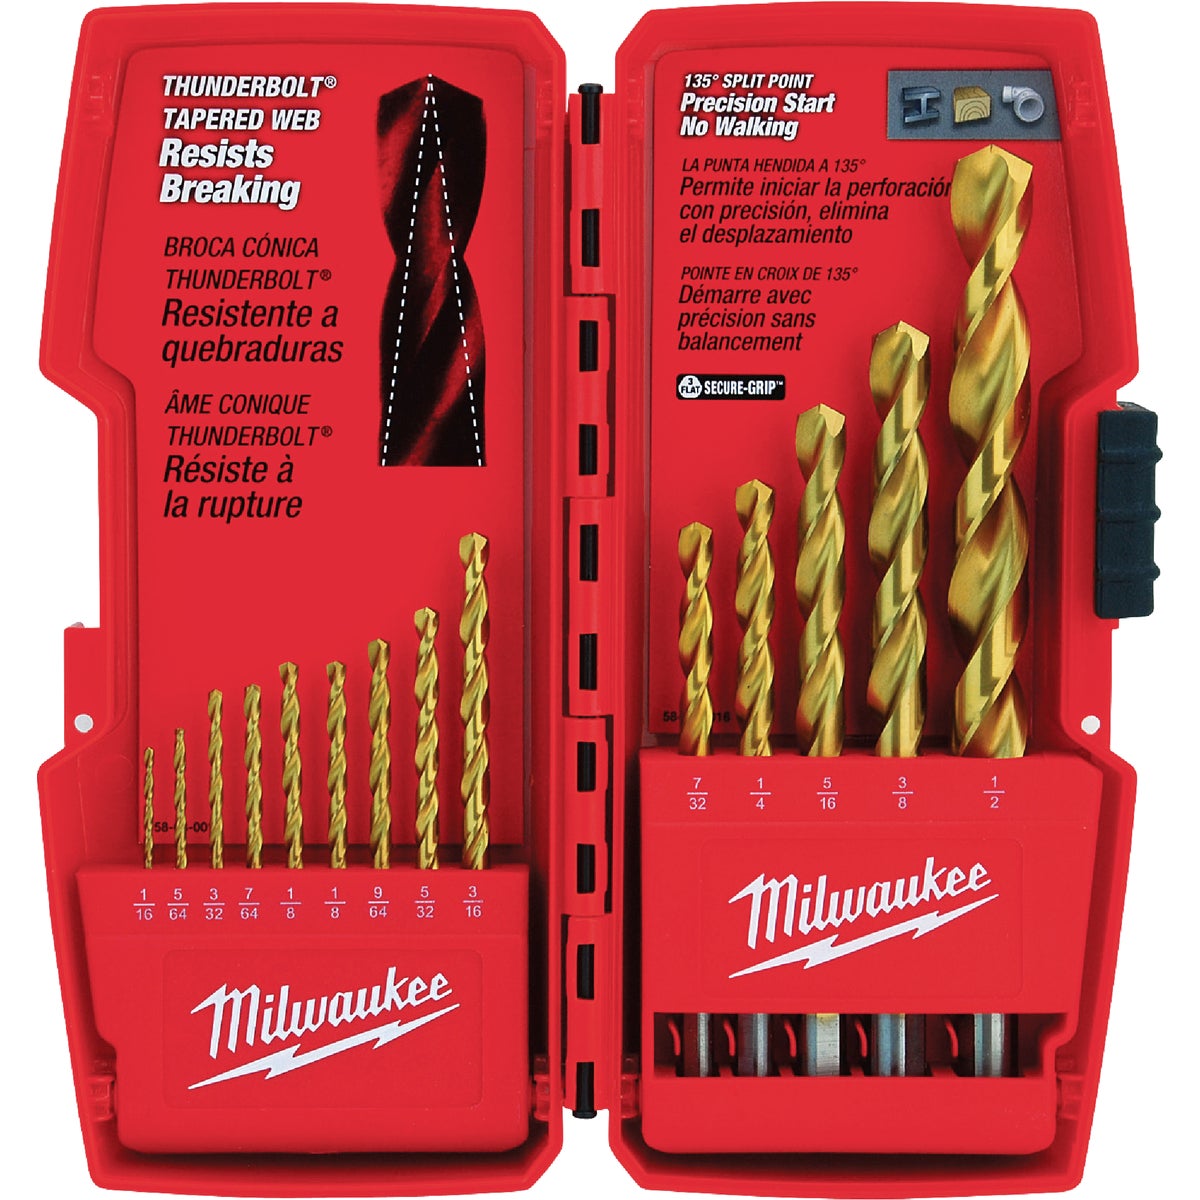 Milwaukee THUNDERBOLT 14-Piece Titanium Drill Bit Set, 1/16 In. thru 1/2 In.